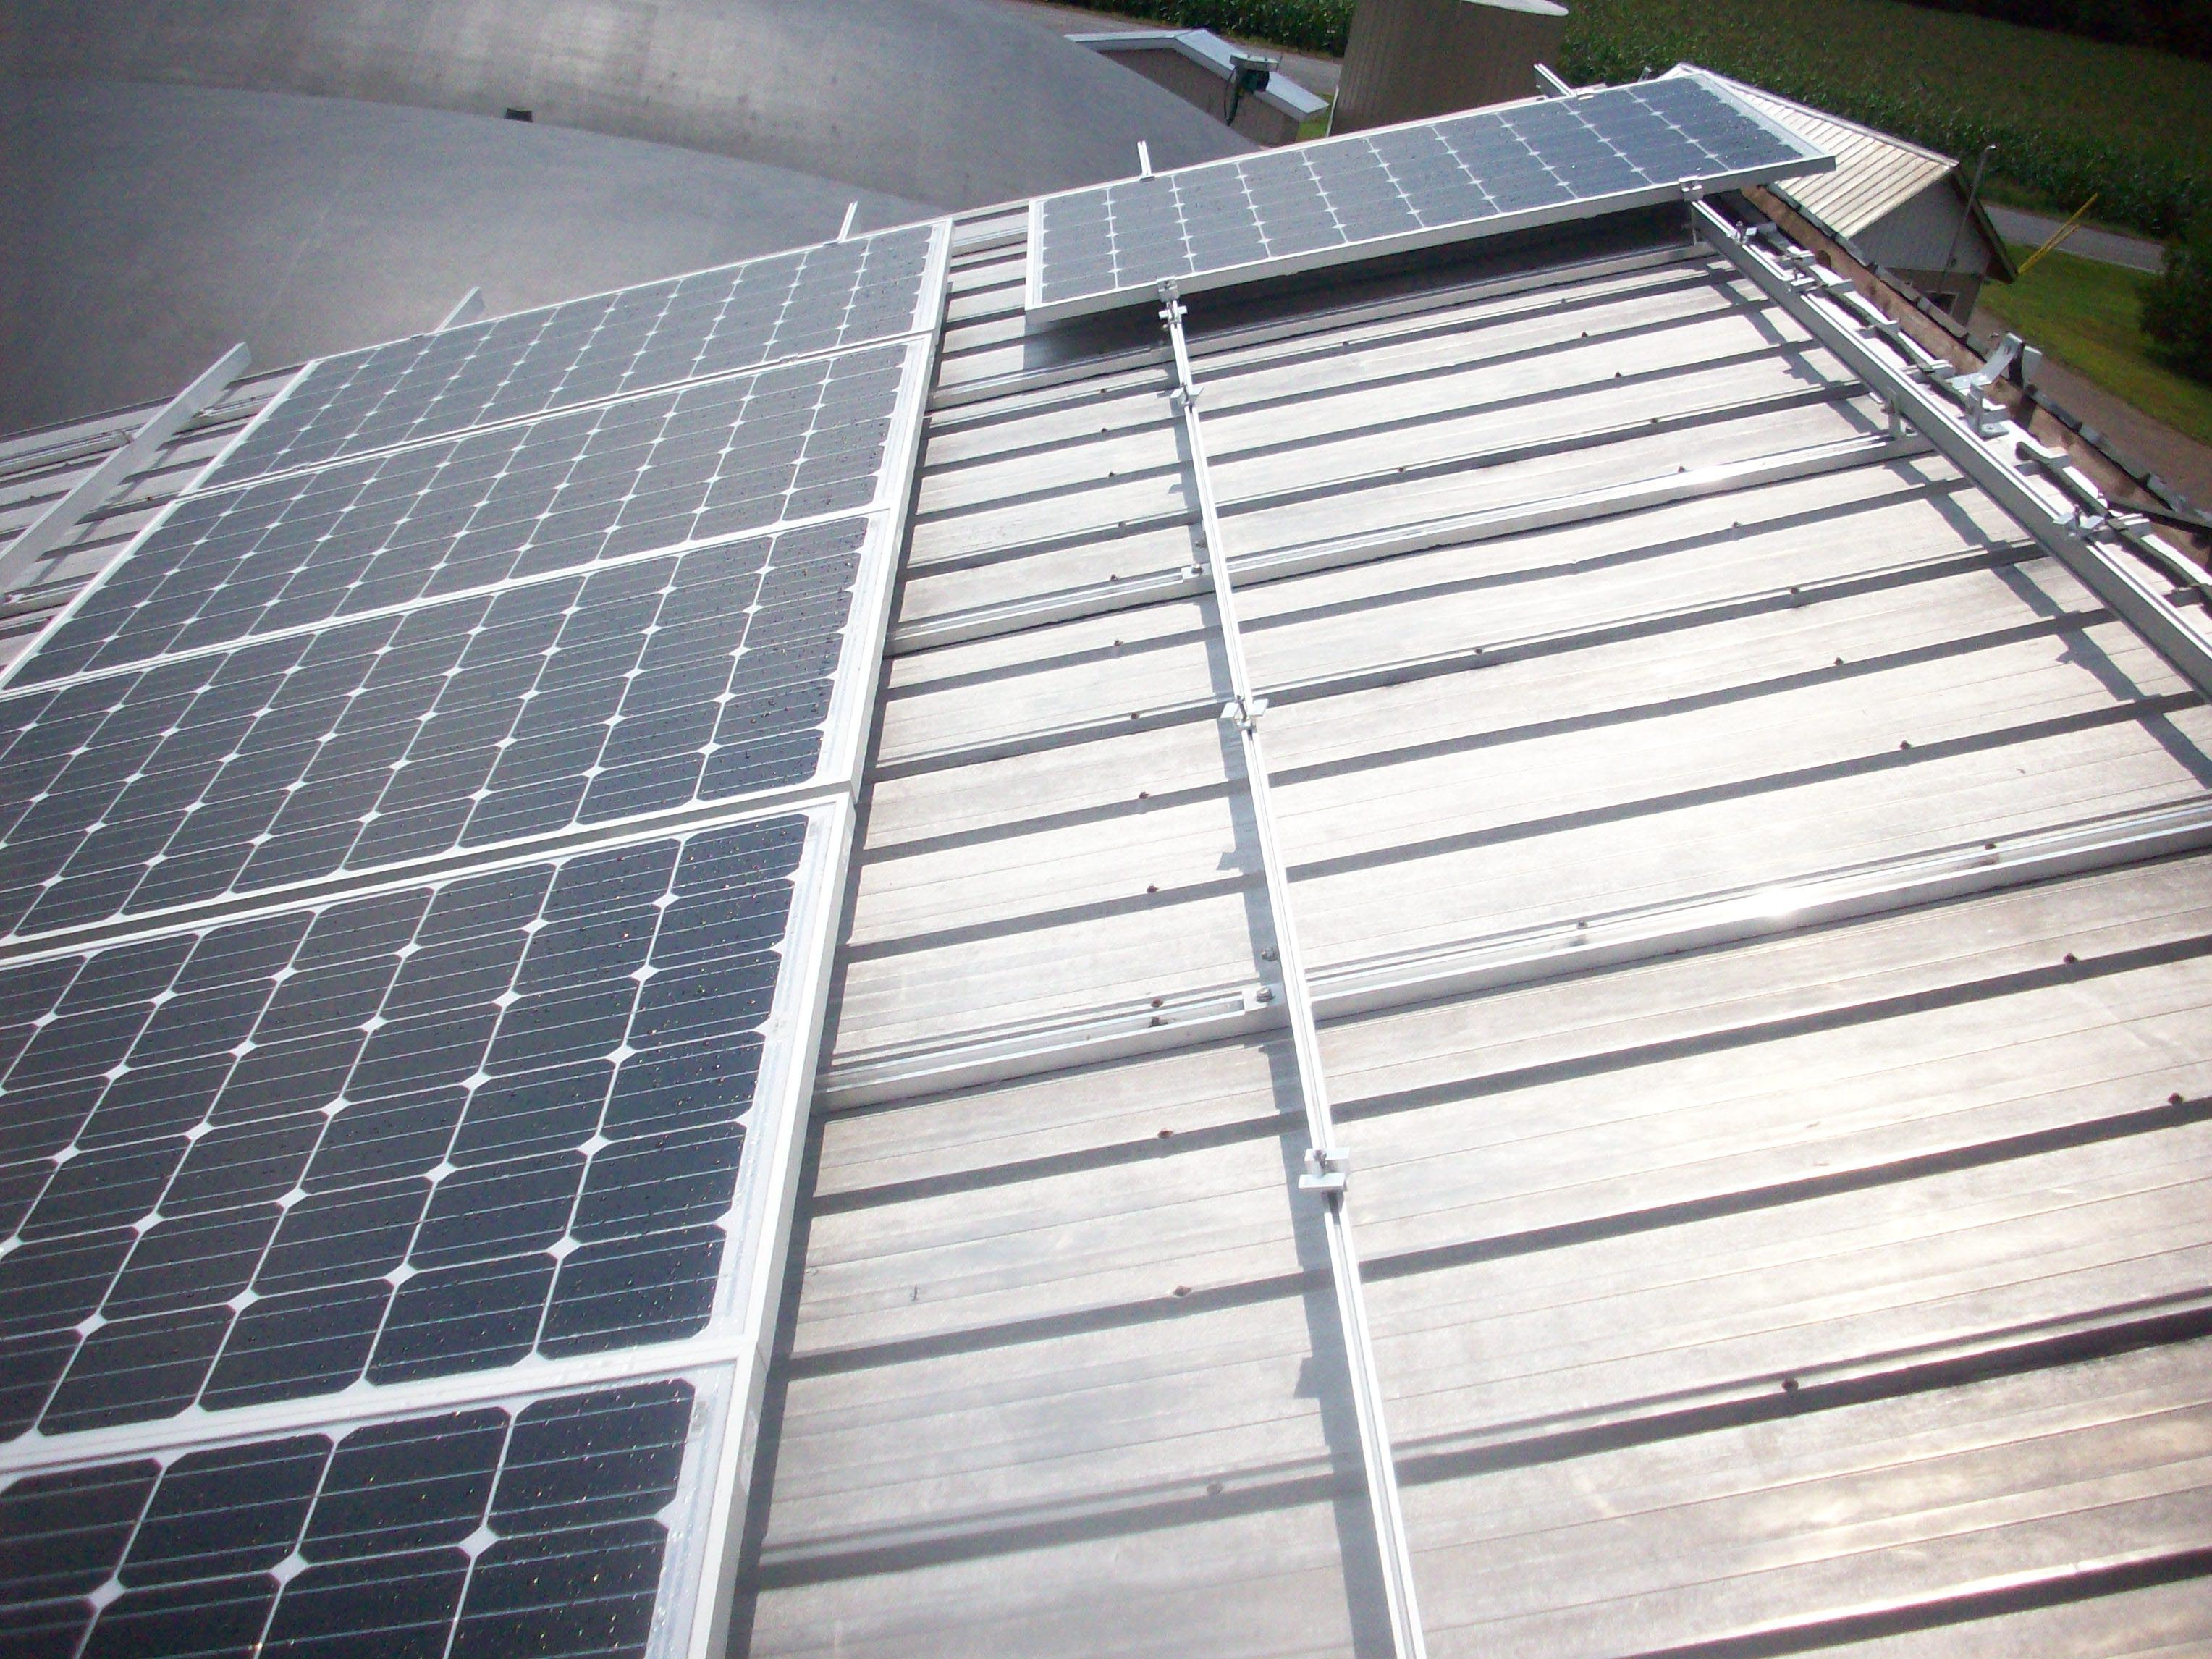 Comment déneiger des panneaux solaires ? 5 solutions